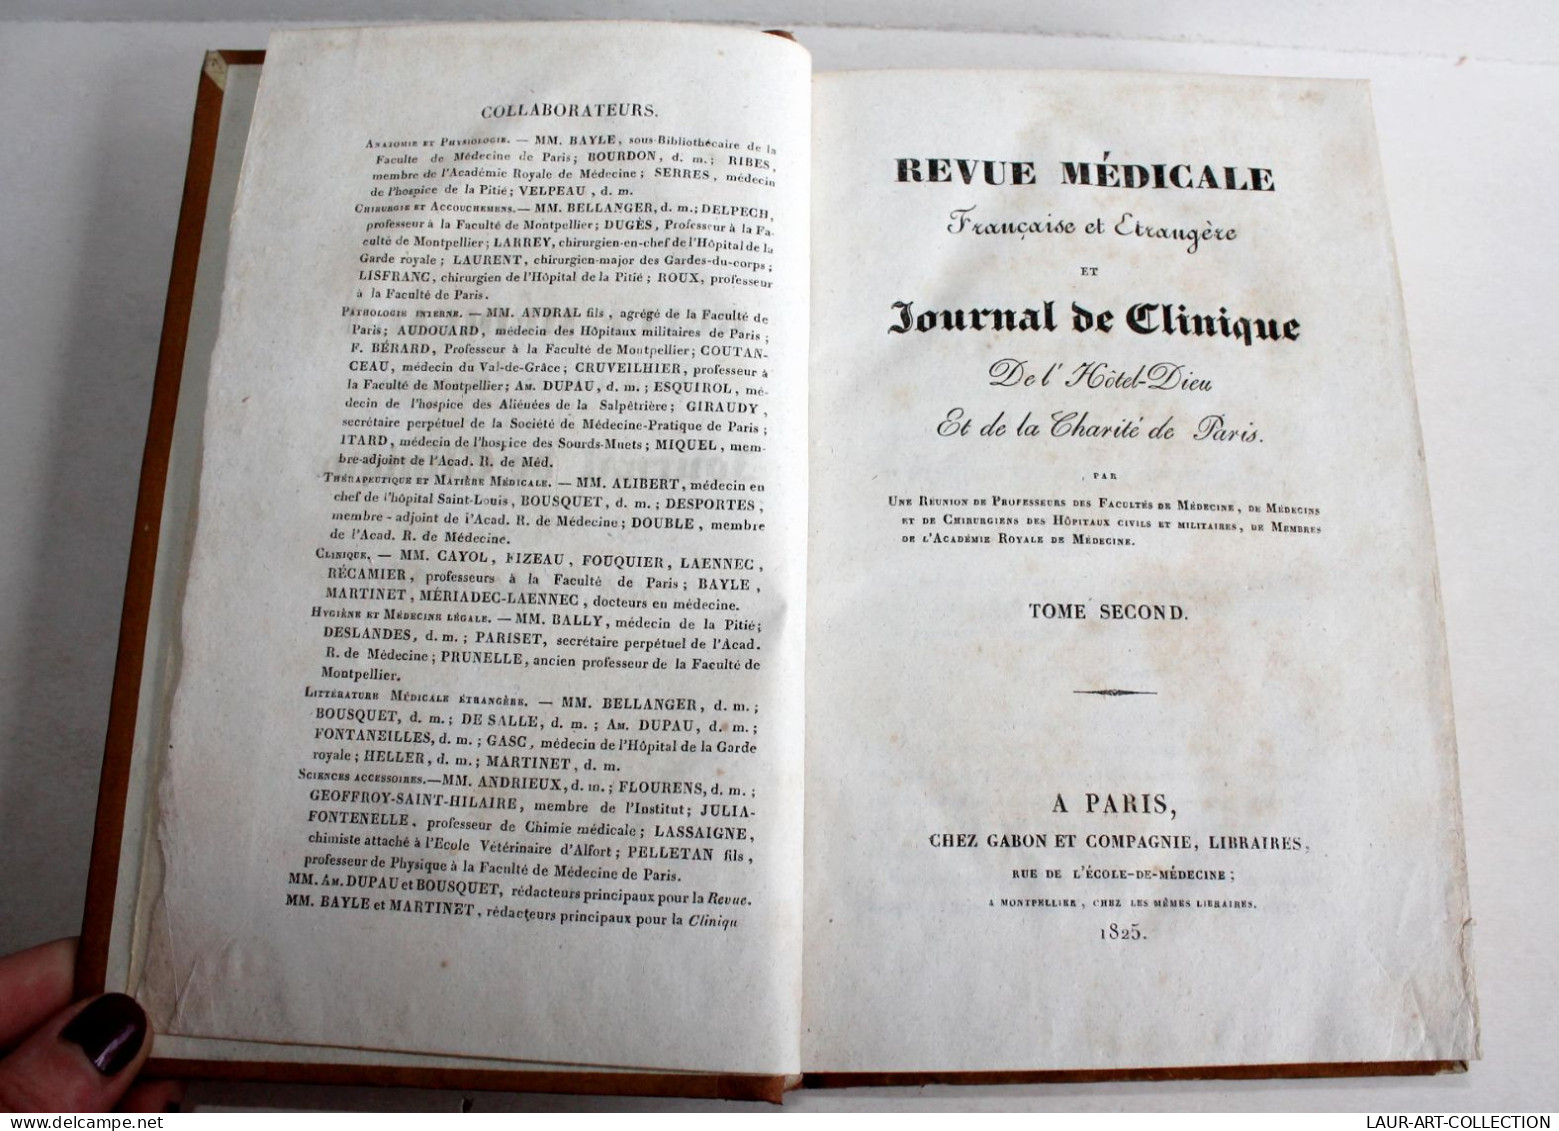 REVUE MEDICALE FRANCAISE & ETRANGERE ET JOURNAL CLINIQUE DE L'HOTEL DIEU 1825 T2 / ANCIEN LIVRE XIXe SIECLE (2603.140) - Gesundheit